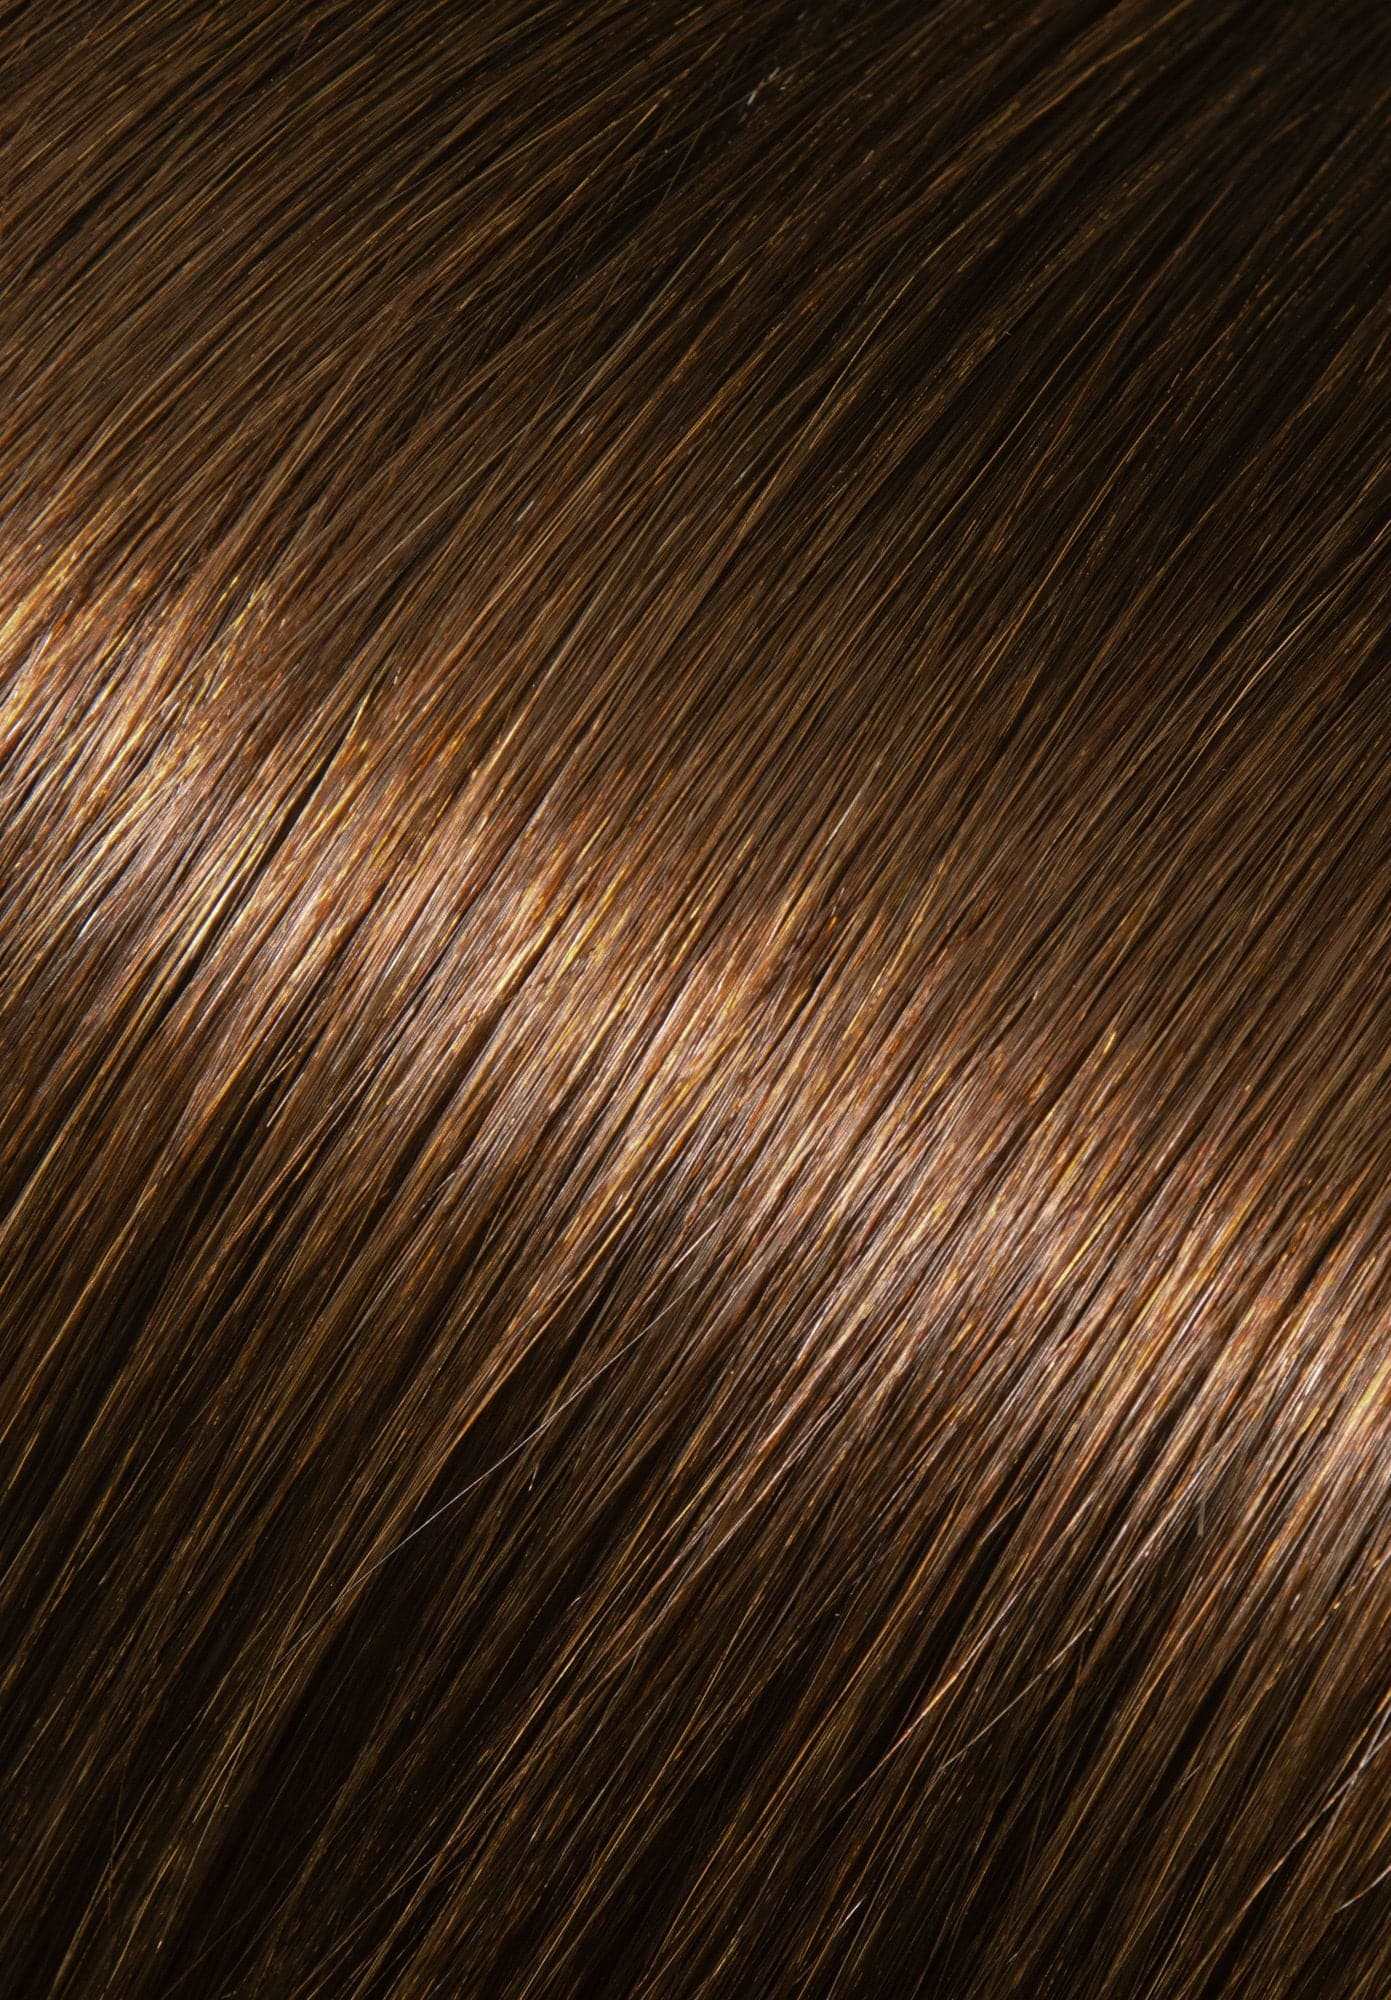 Kera-Link Pro Wavy Color #6 Dark Chestnut Brown